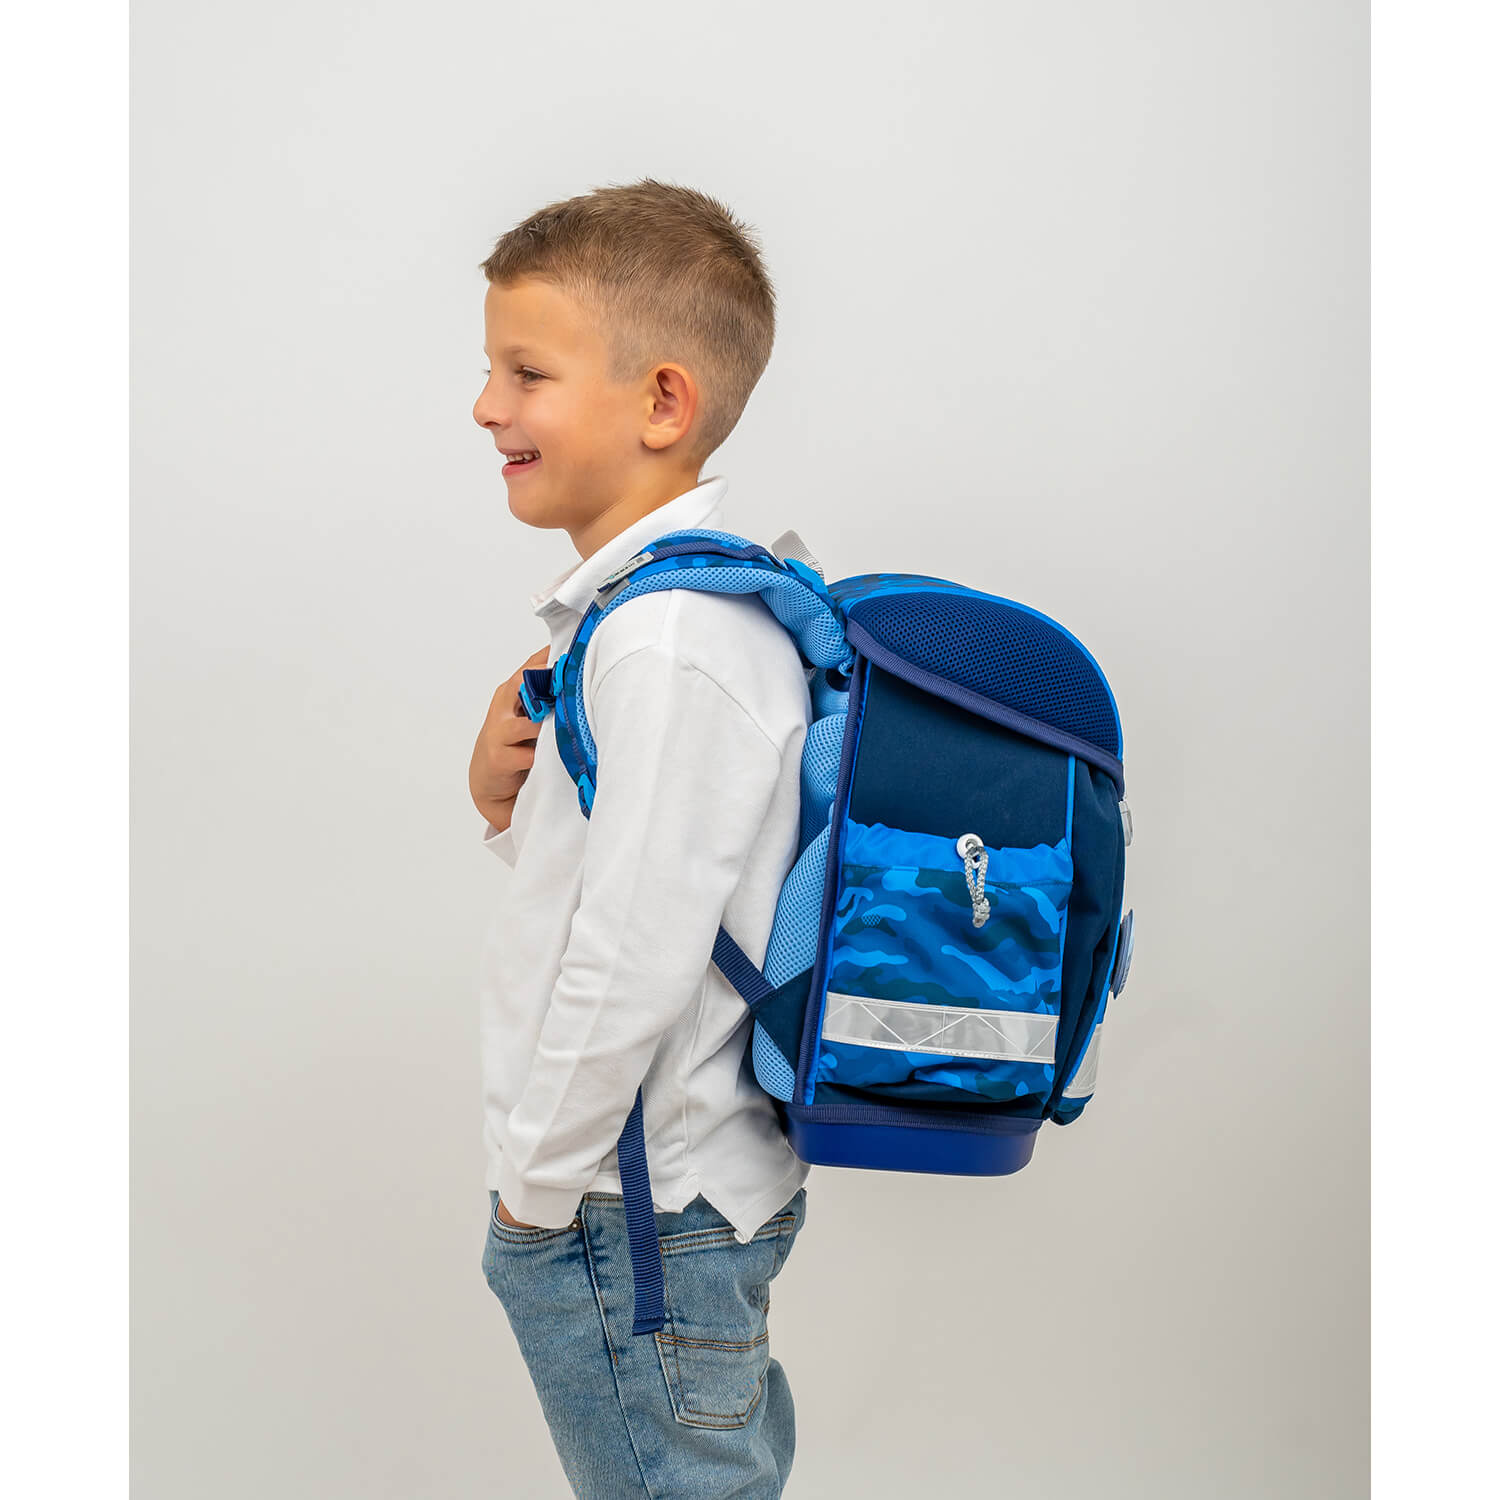 Classy Blue Camouflage schoolbag set 6 pcs with GRATIS Patch set